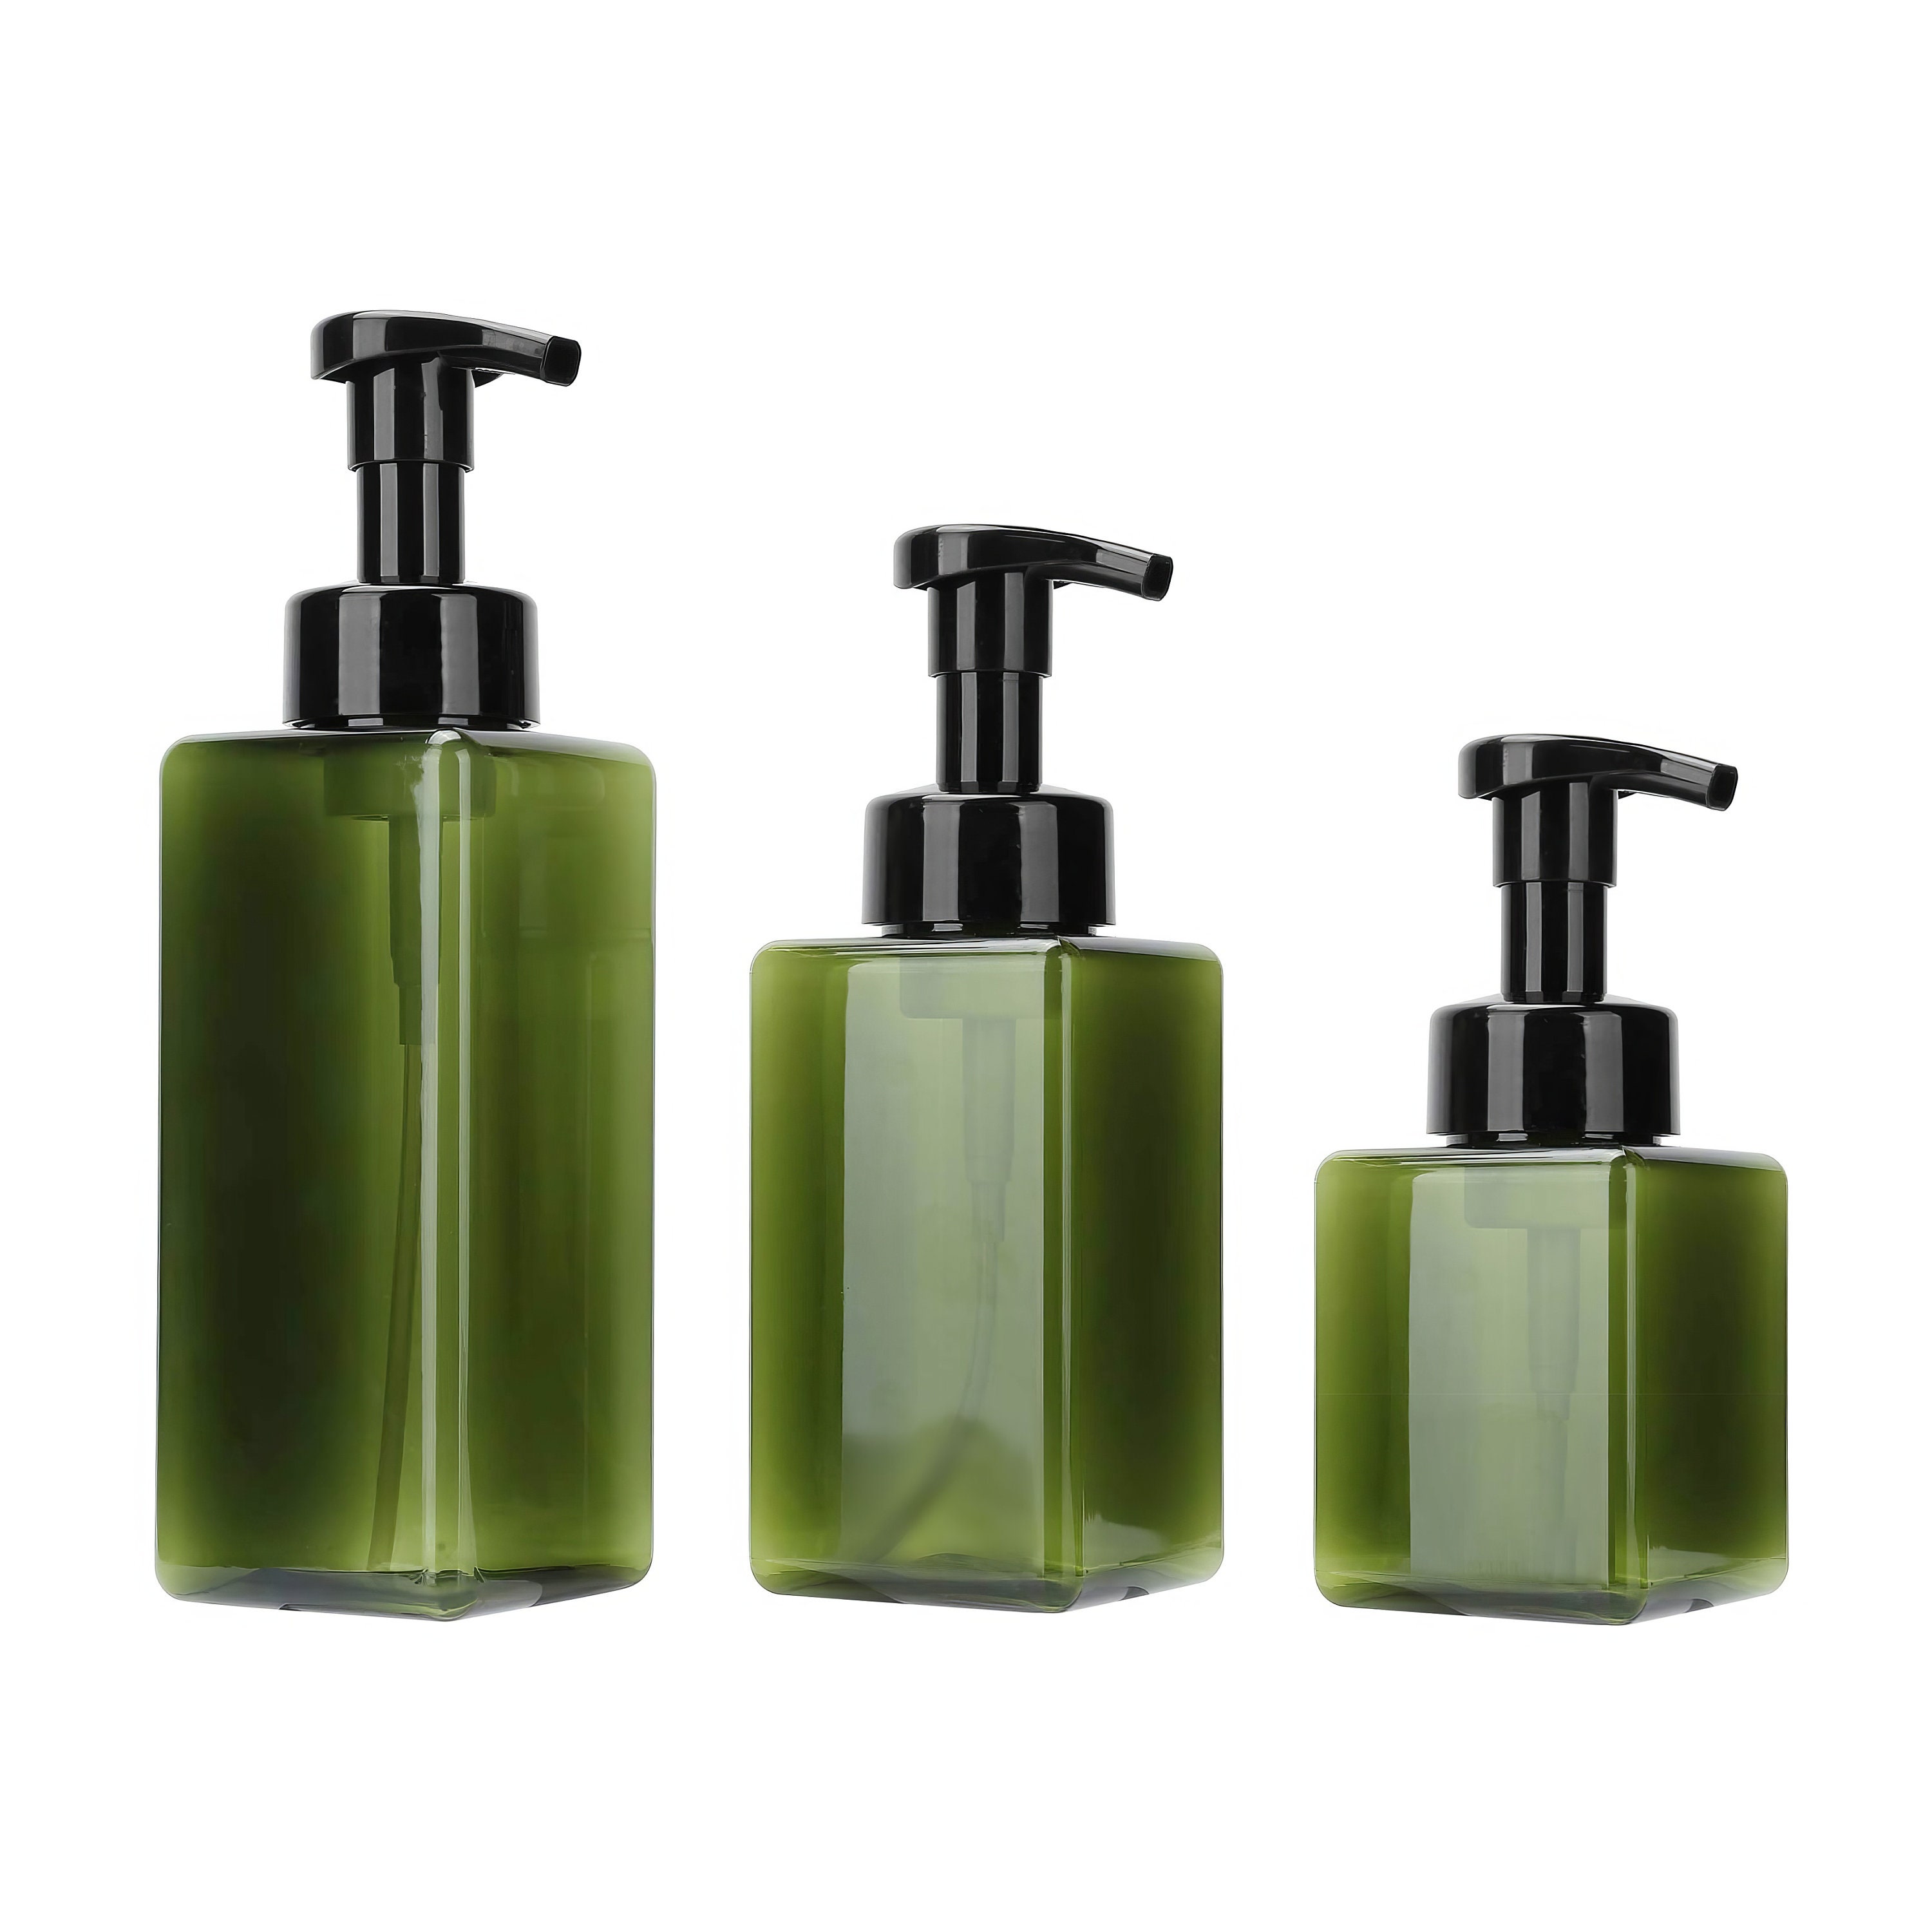 Tall Liquid Soap/Lotion Dispenser in Graffiti Green